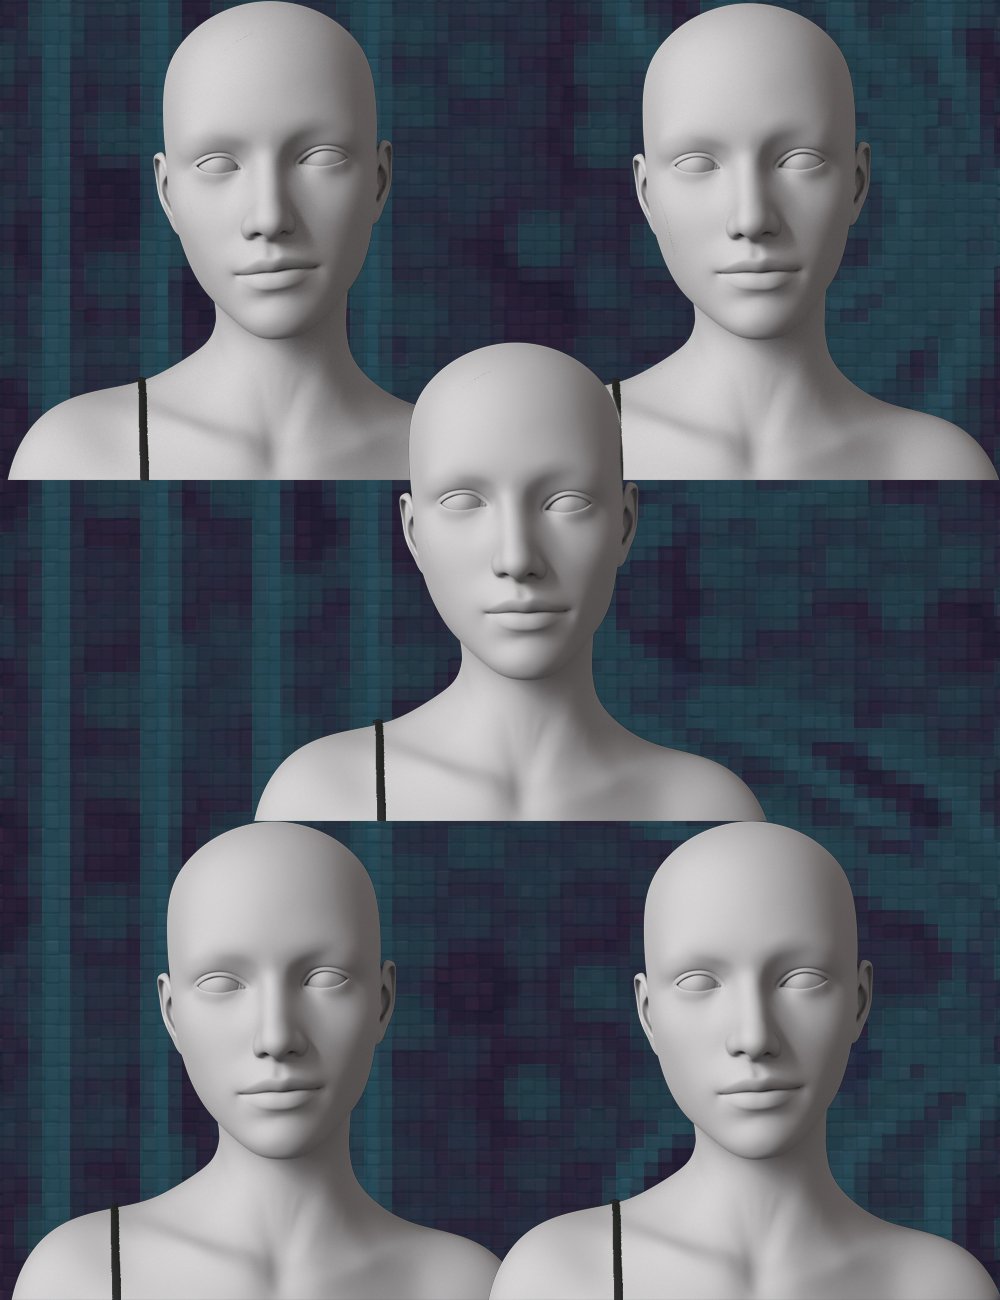 Asymmetry Merchant Resource for Genesis 8.1 Female by: PedroFurtadoArts, 3D Models by Daz 3D